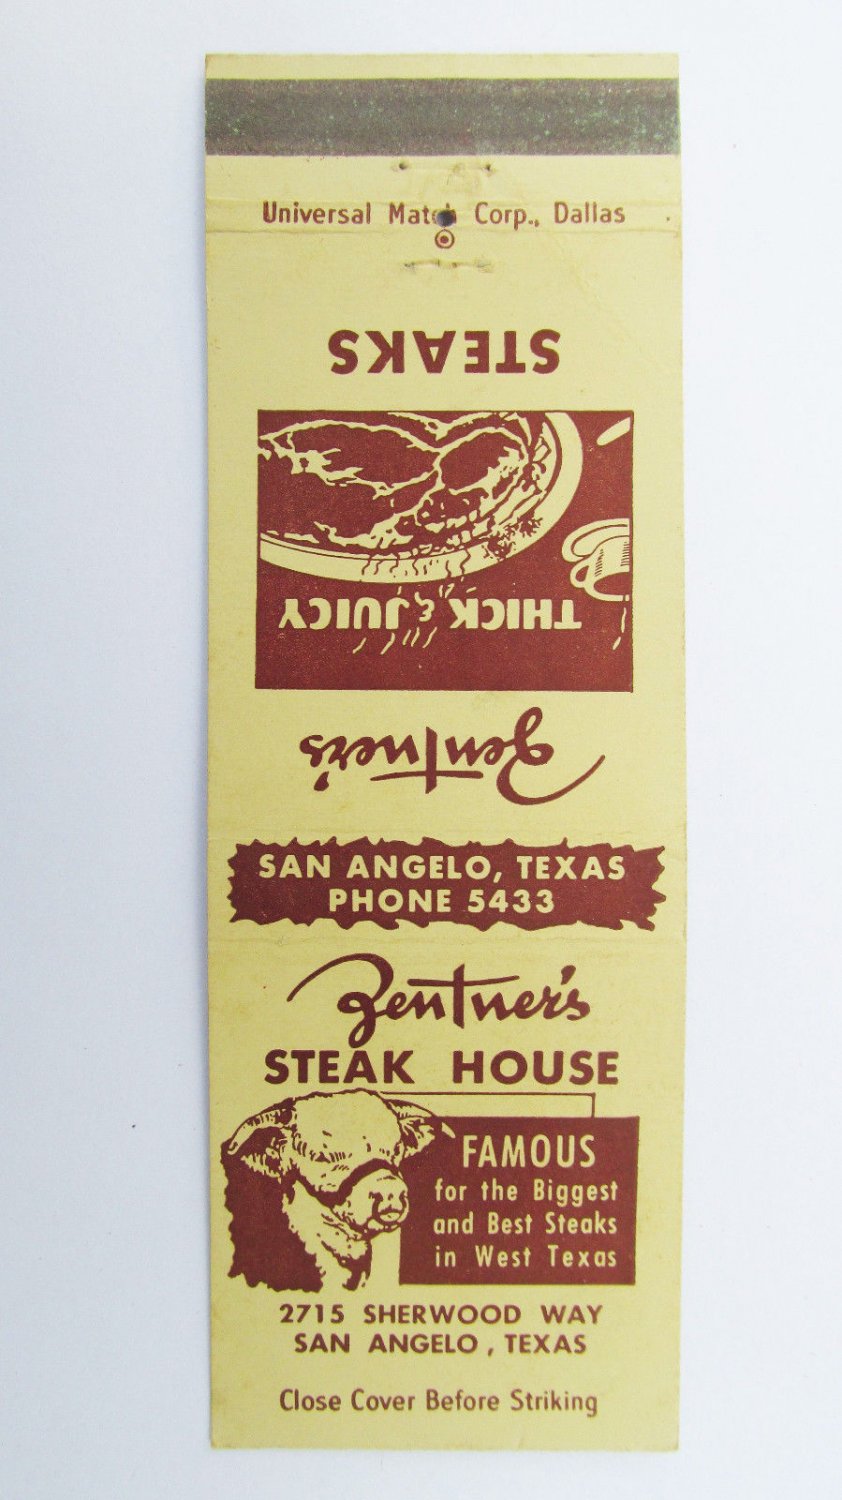 Zentner's Steak House - San Angelo, Texas Restaurant 20 Strike ...